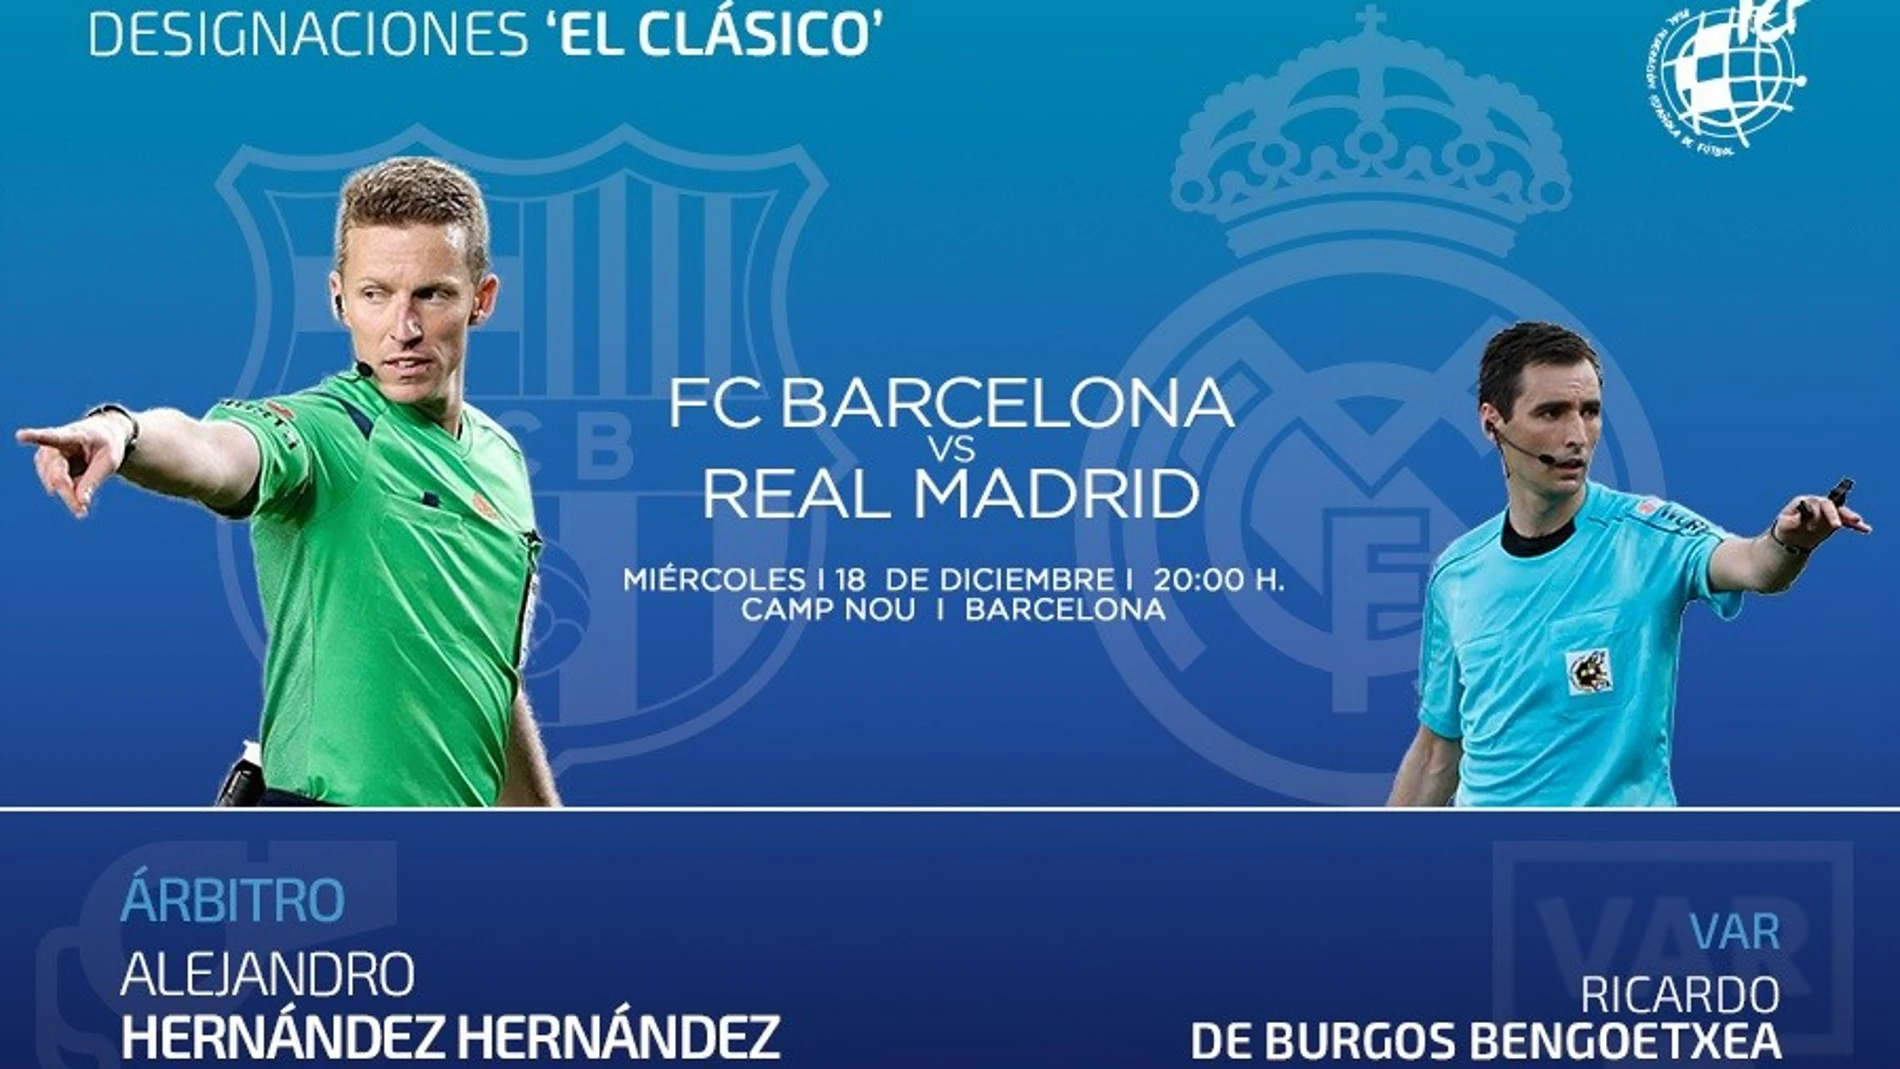 Fútbol.- Hernández Hernández arbitrará el Clásico FC Barcelona-Real Madrid en el Camp Nou